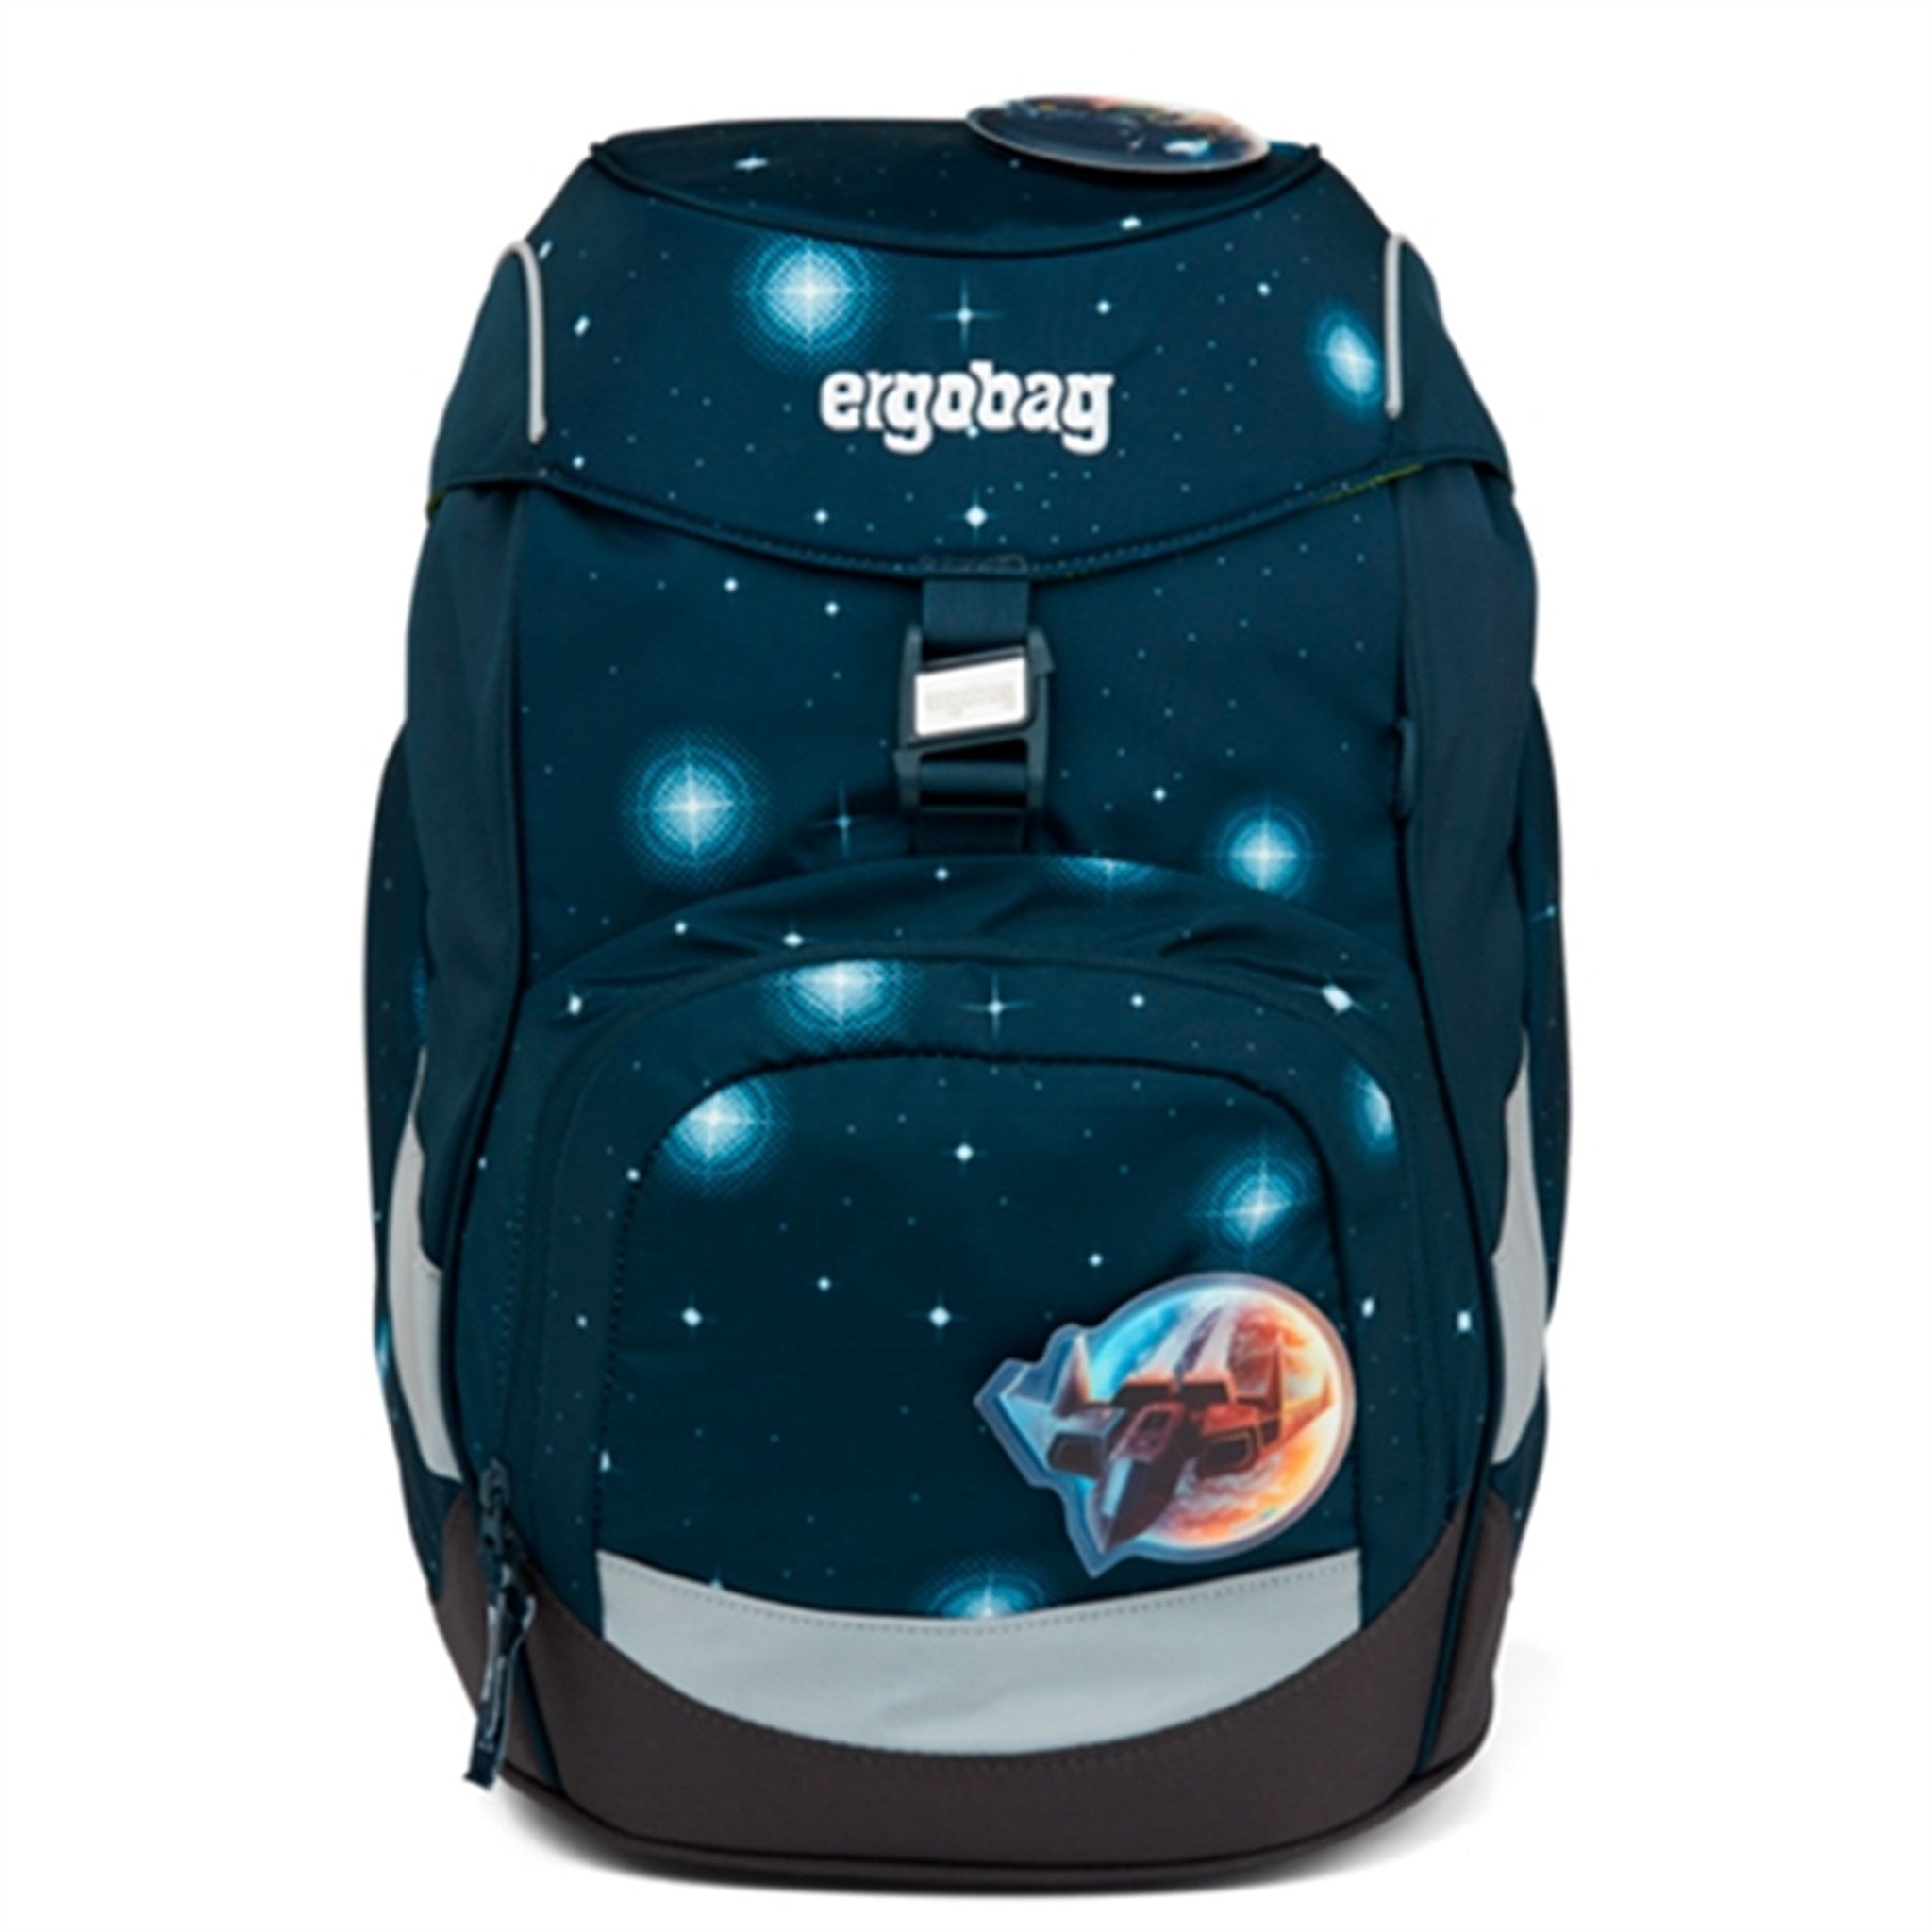 Ergobag School Bag Prime AtmosBear